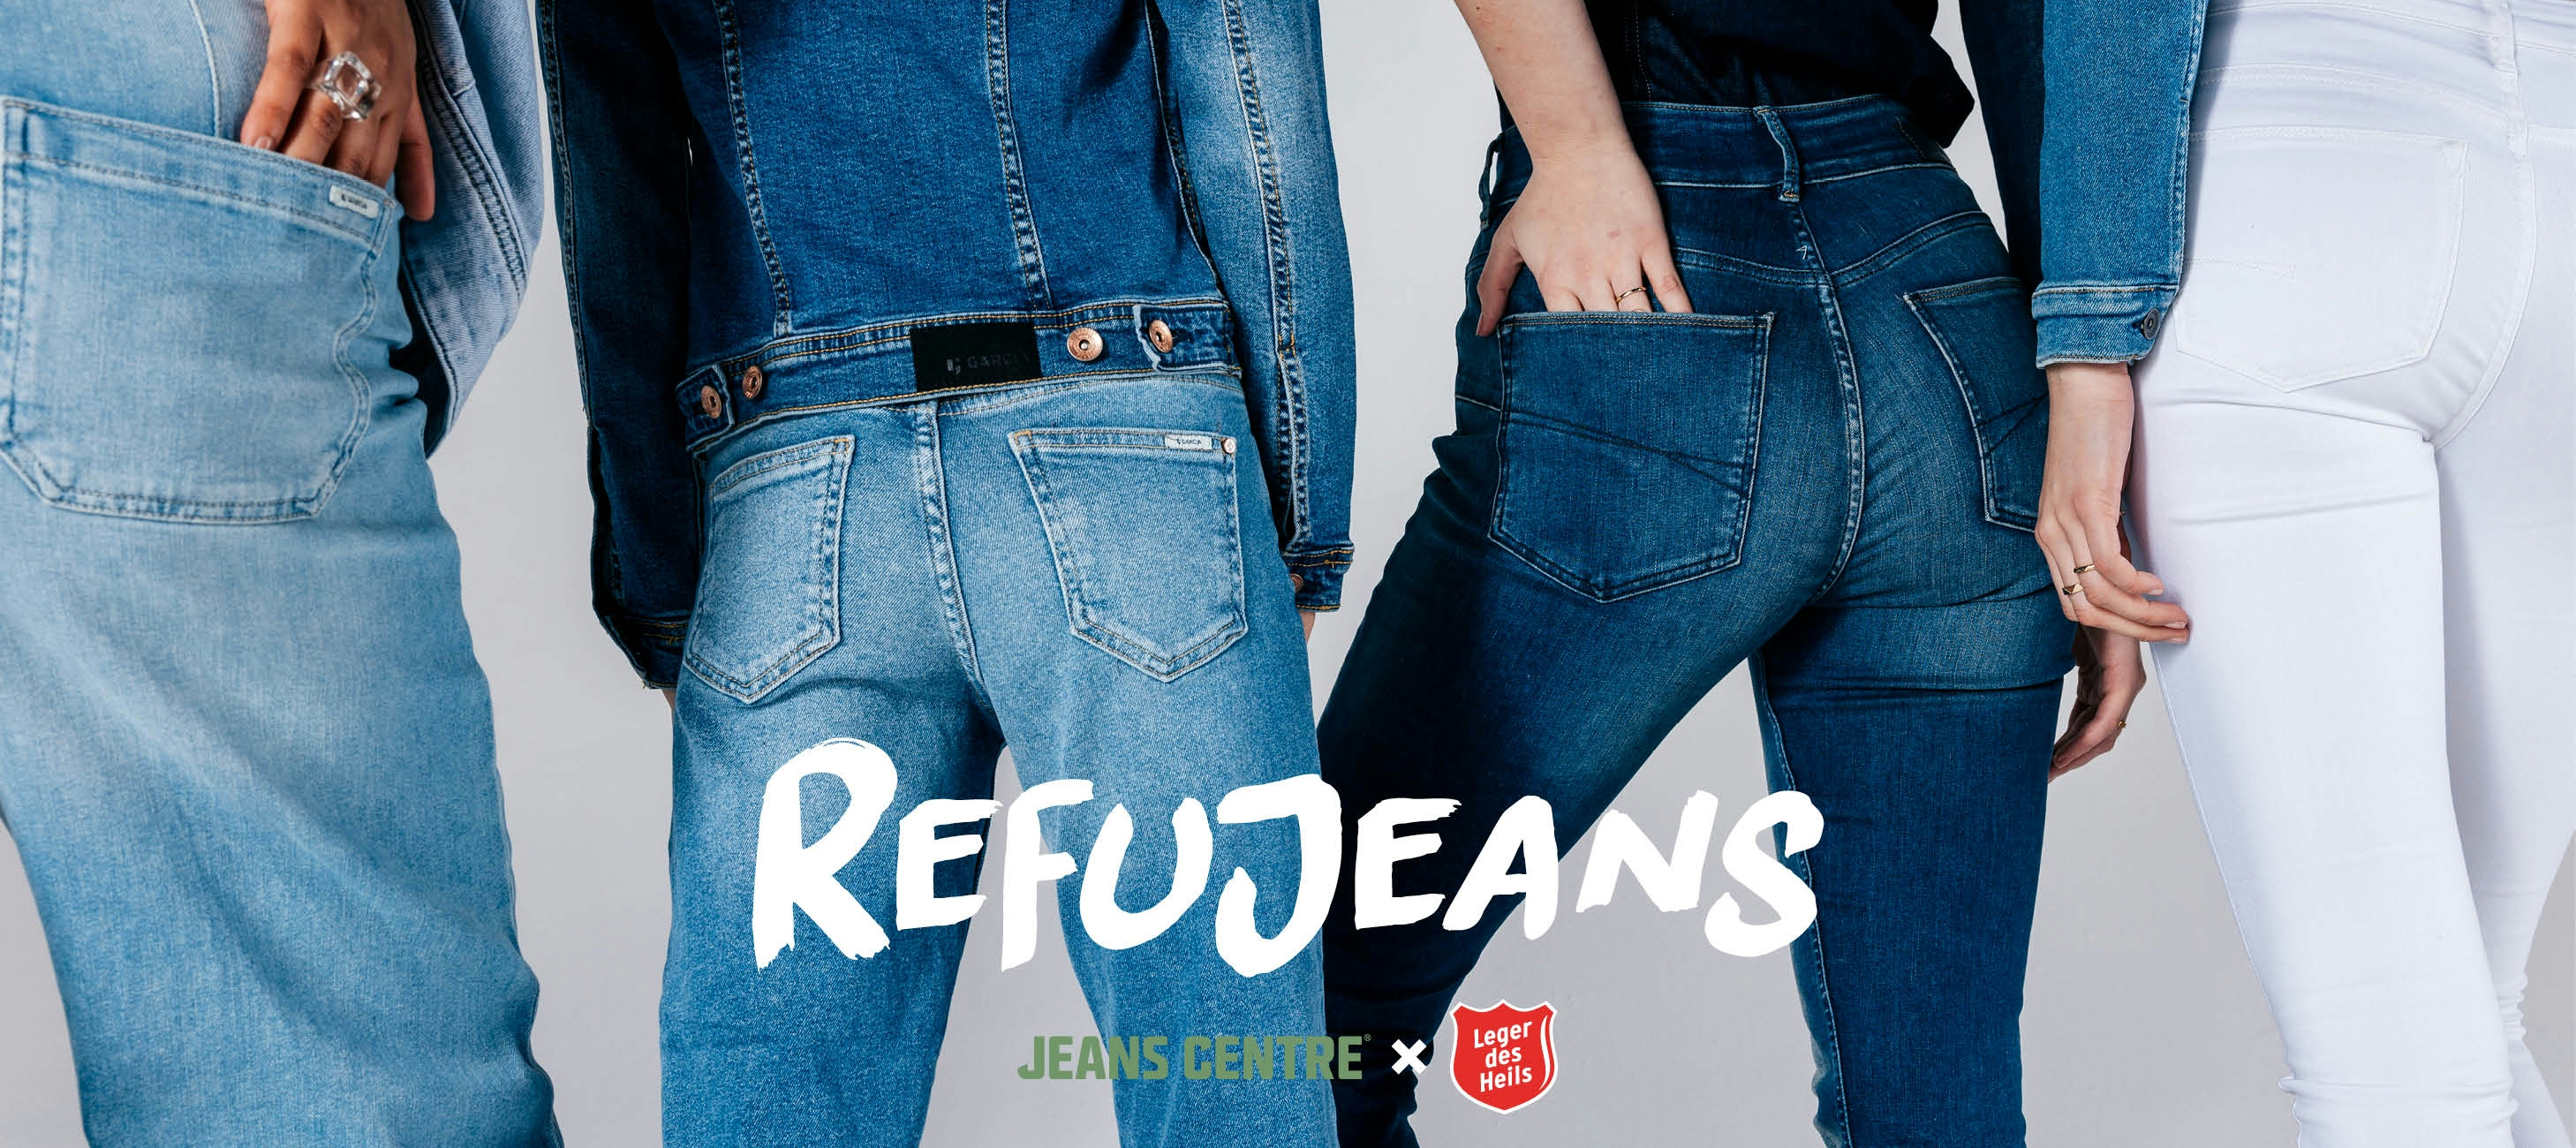 Refujeans Jeans Centre x Leger des heils | inzameling voor vluchtelingen